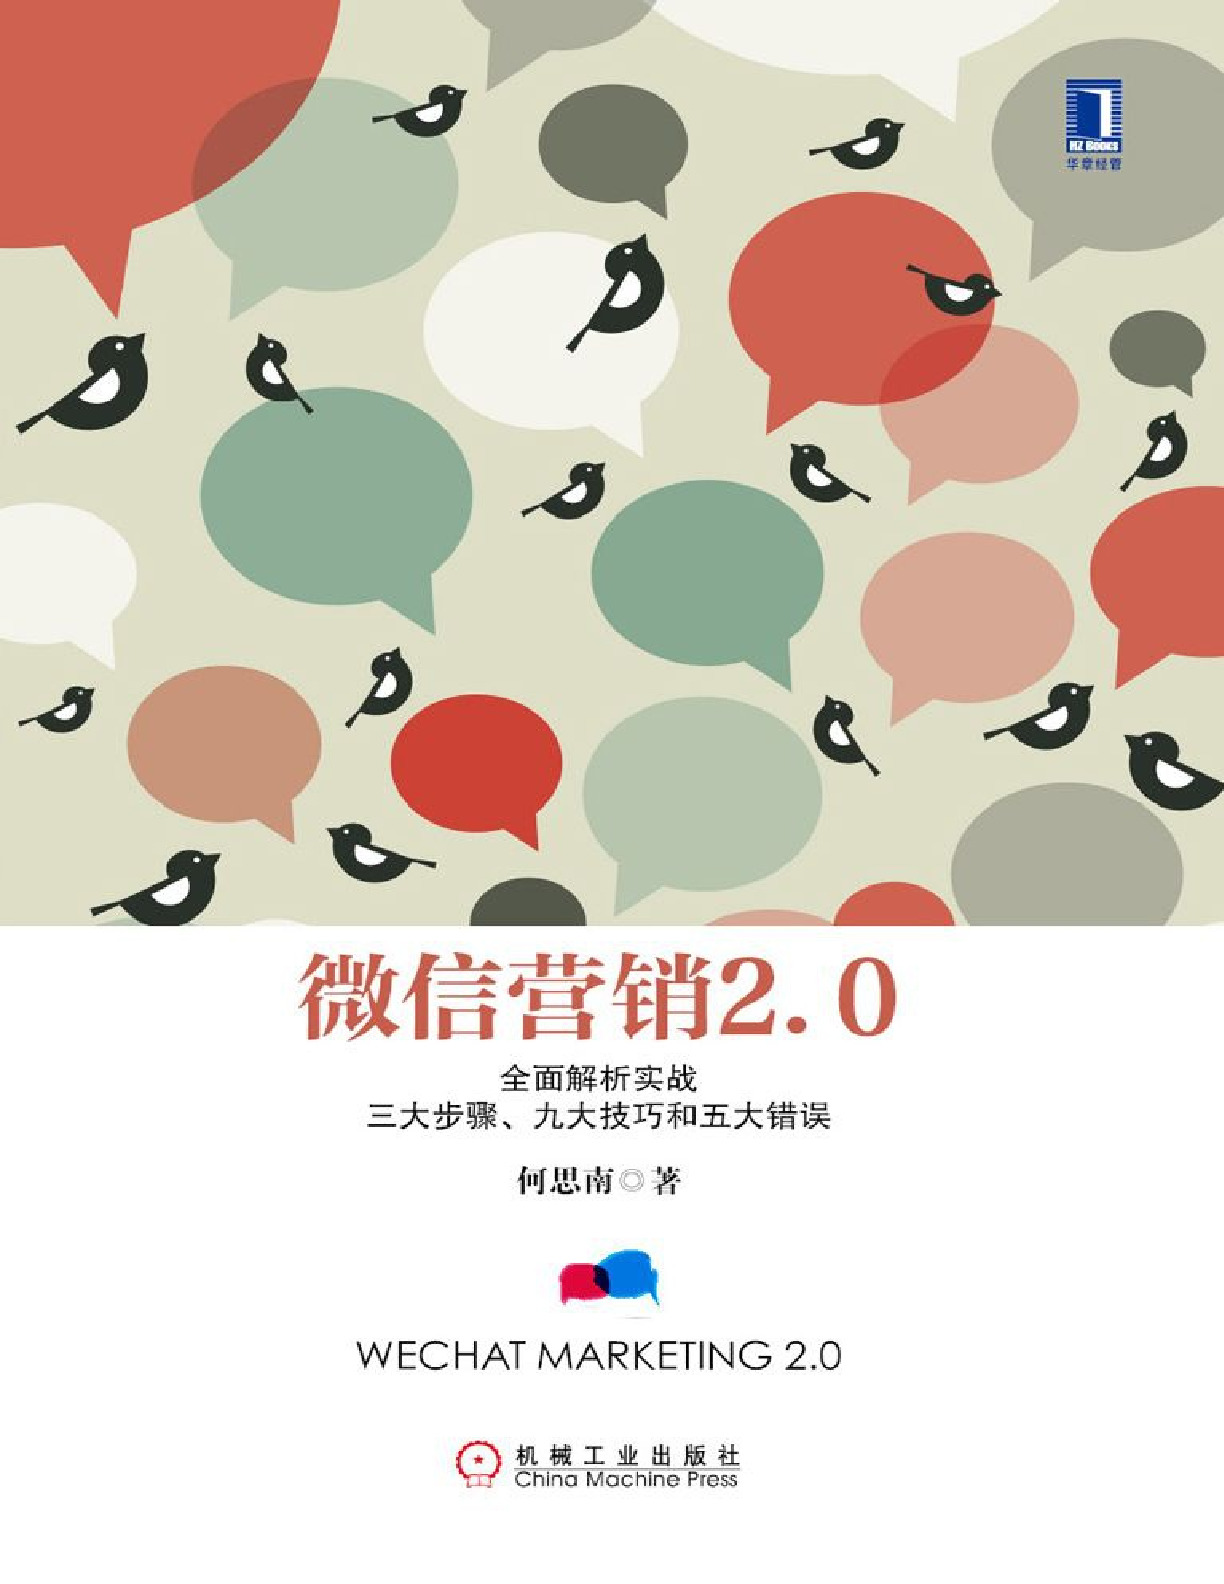 微信营销2.0：全面解析实战三大步骤、九大技巧和五大错误 – 何思南